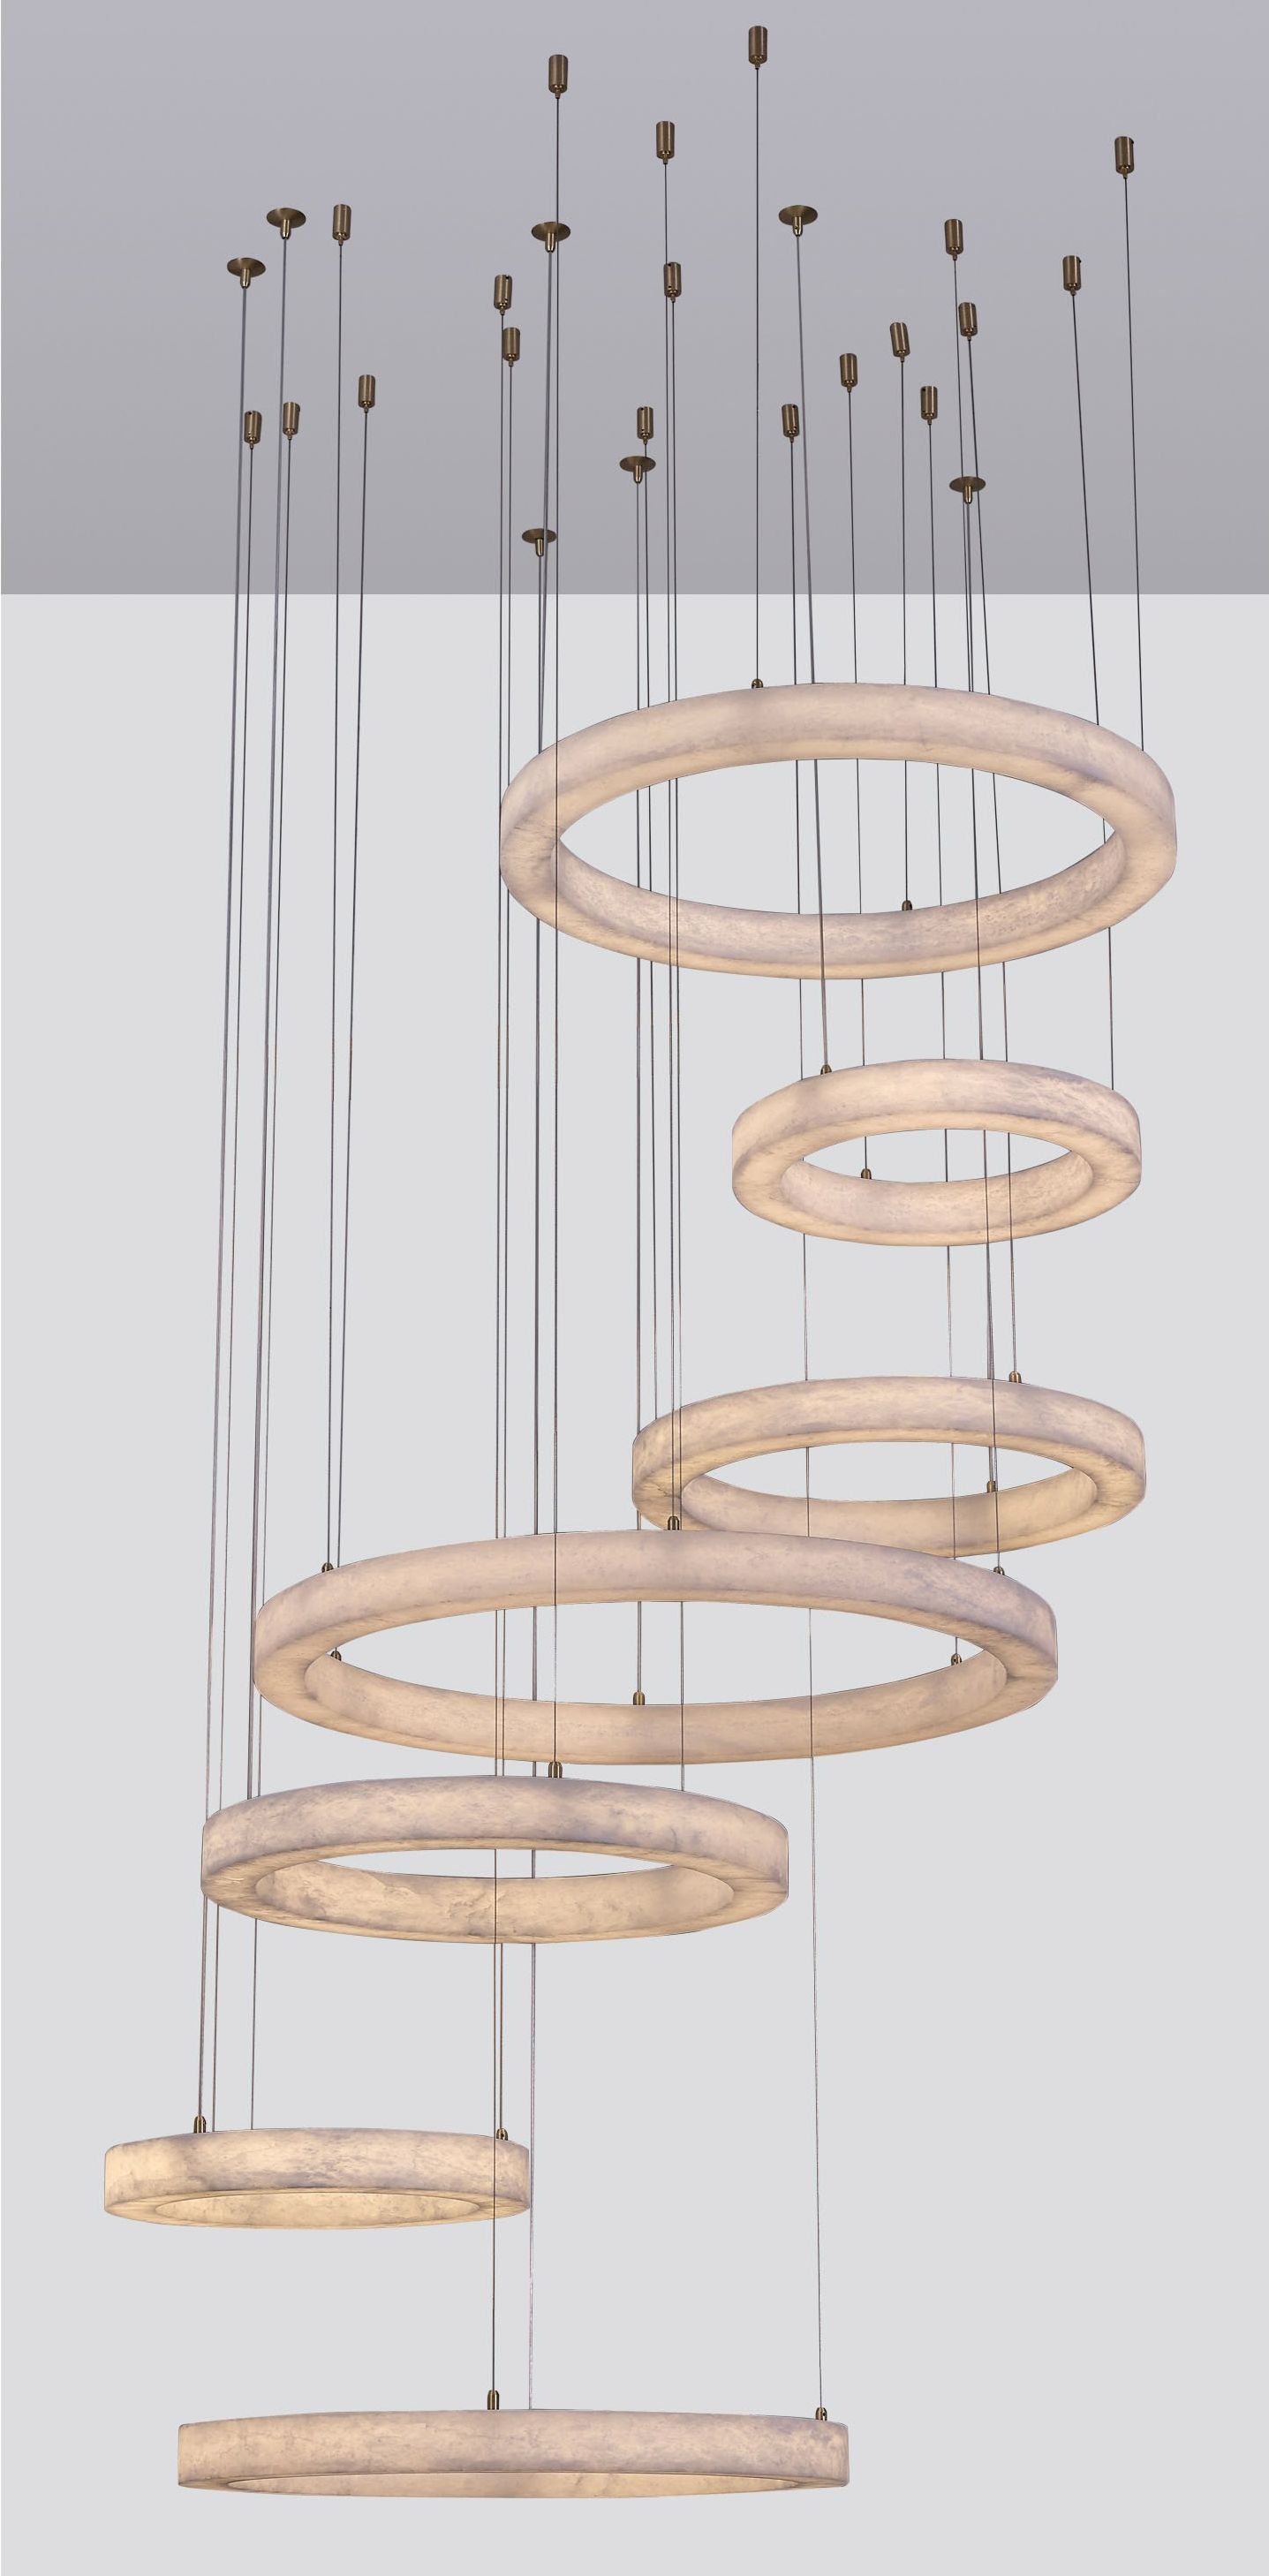 UMOSTA chandelier by Romatti